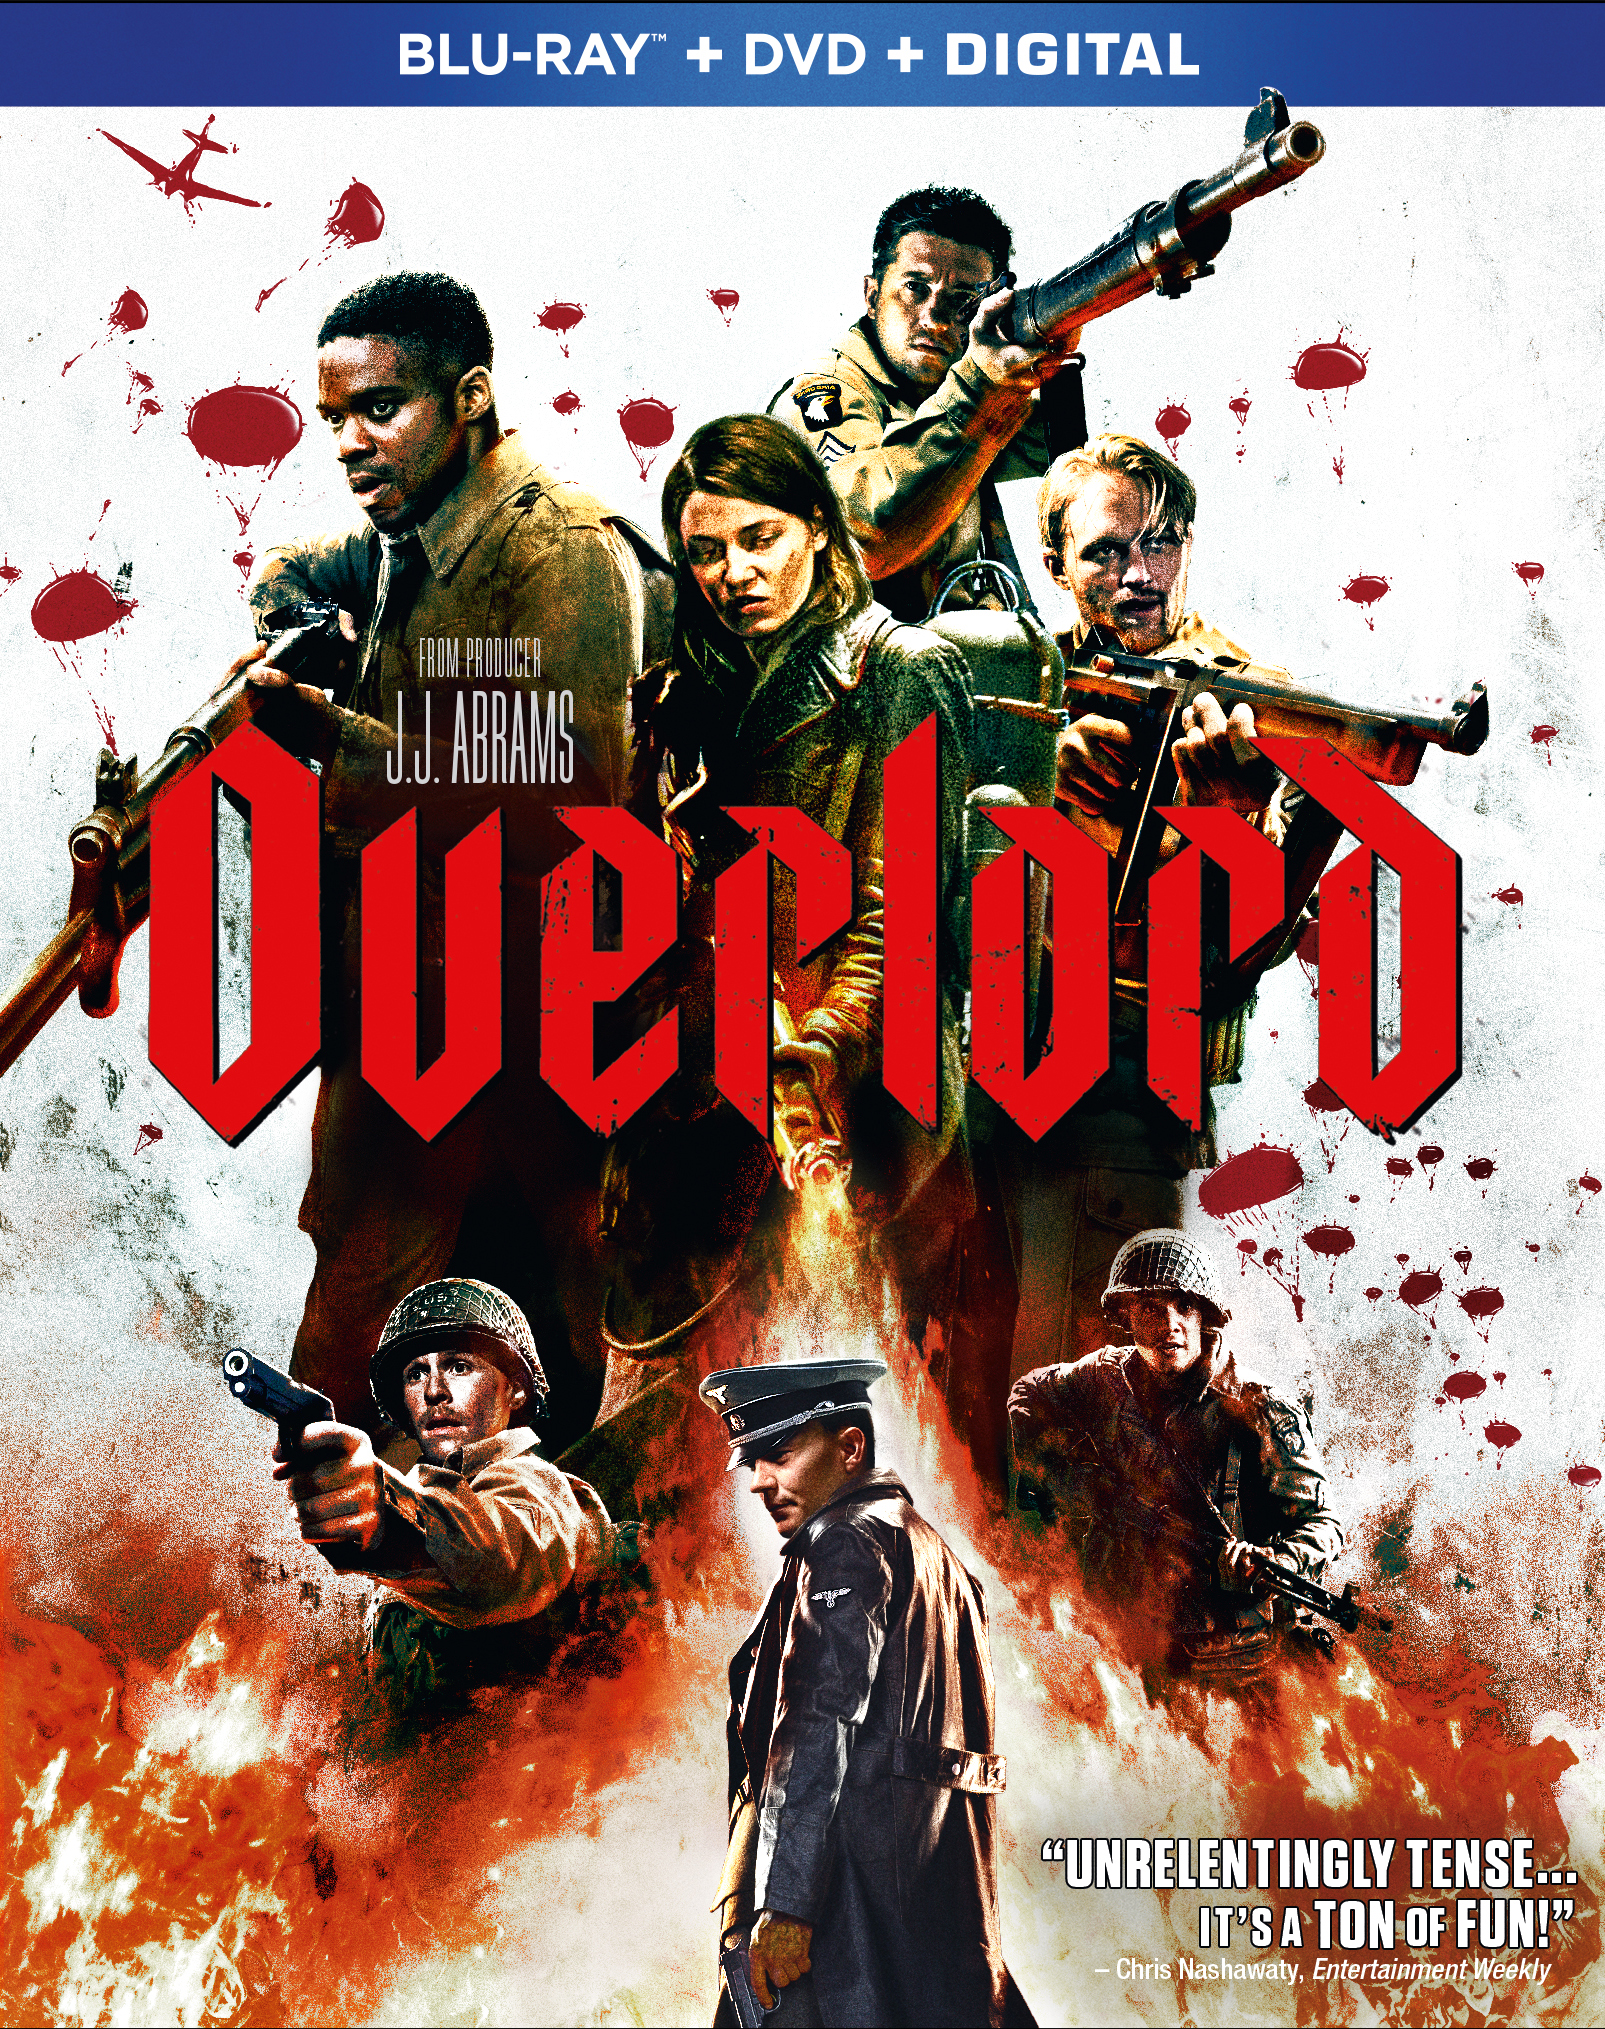 Overlord III: Season Three [Blu-ray] - Best Buy